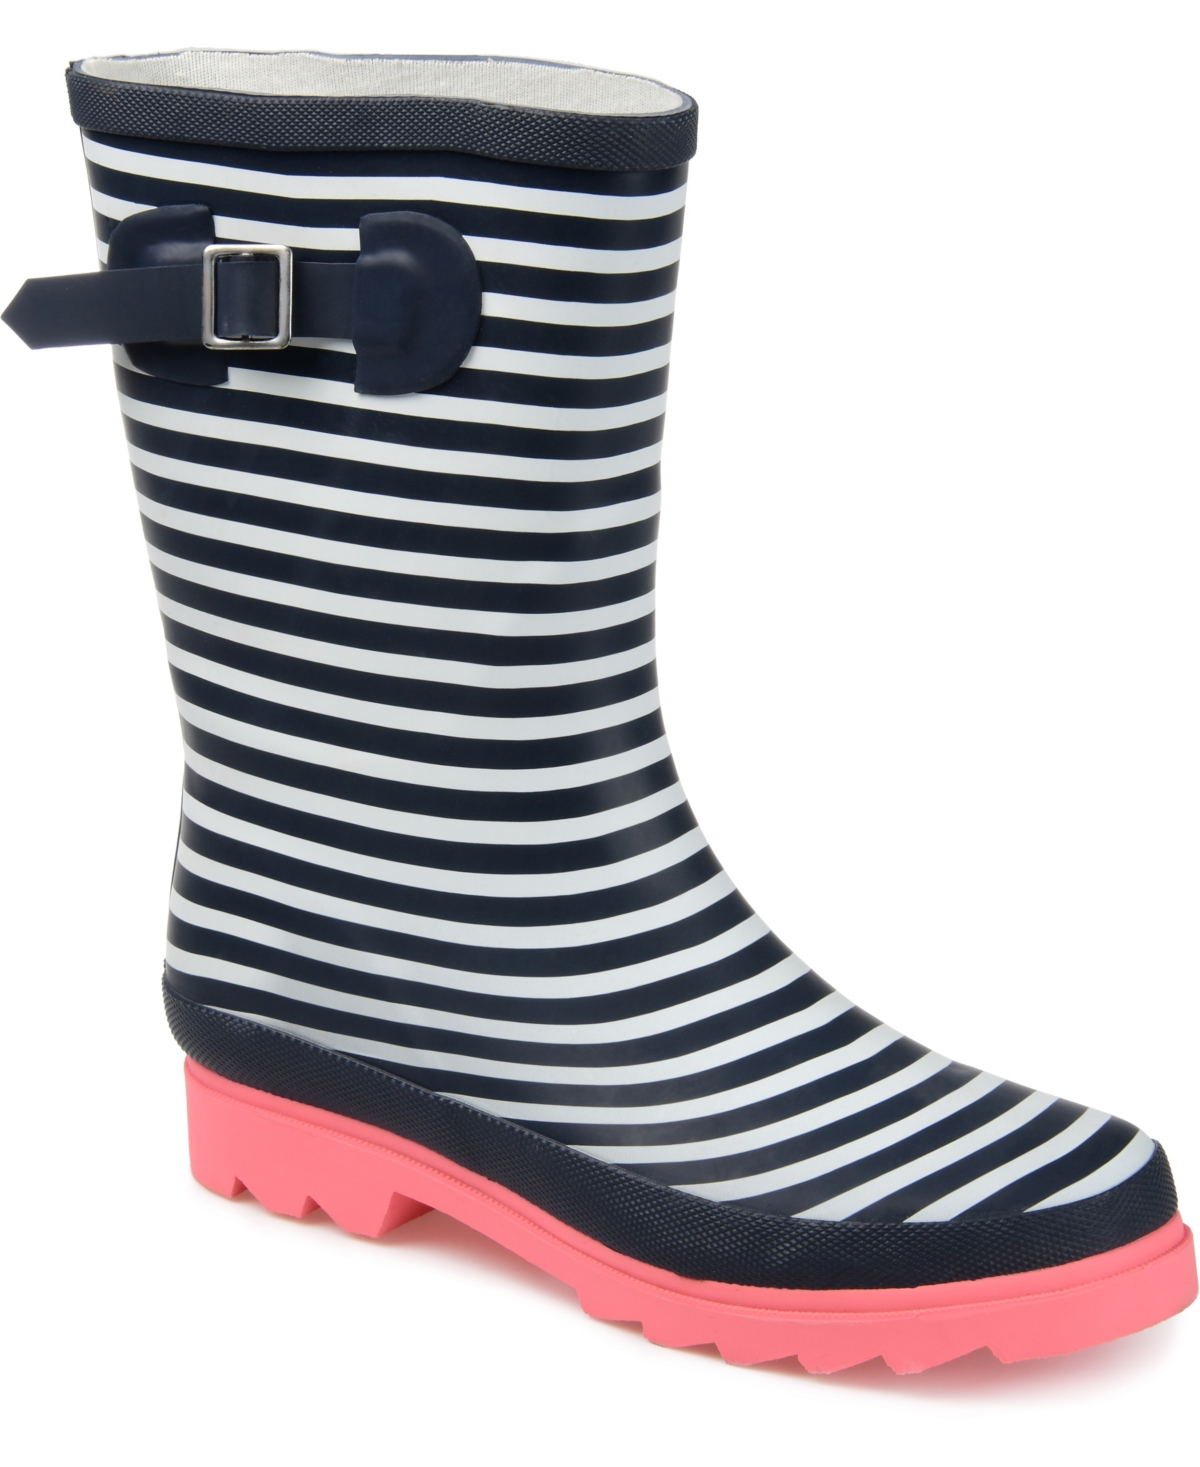 Women's Seattle Rain Boots - Stripe